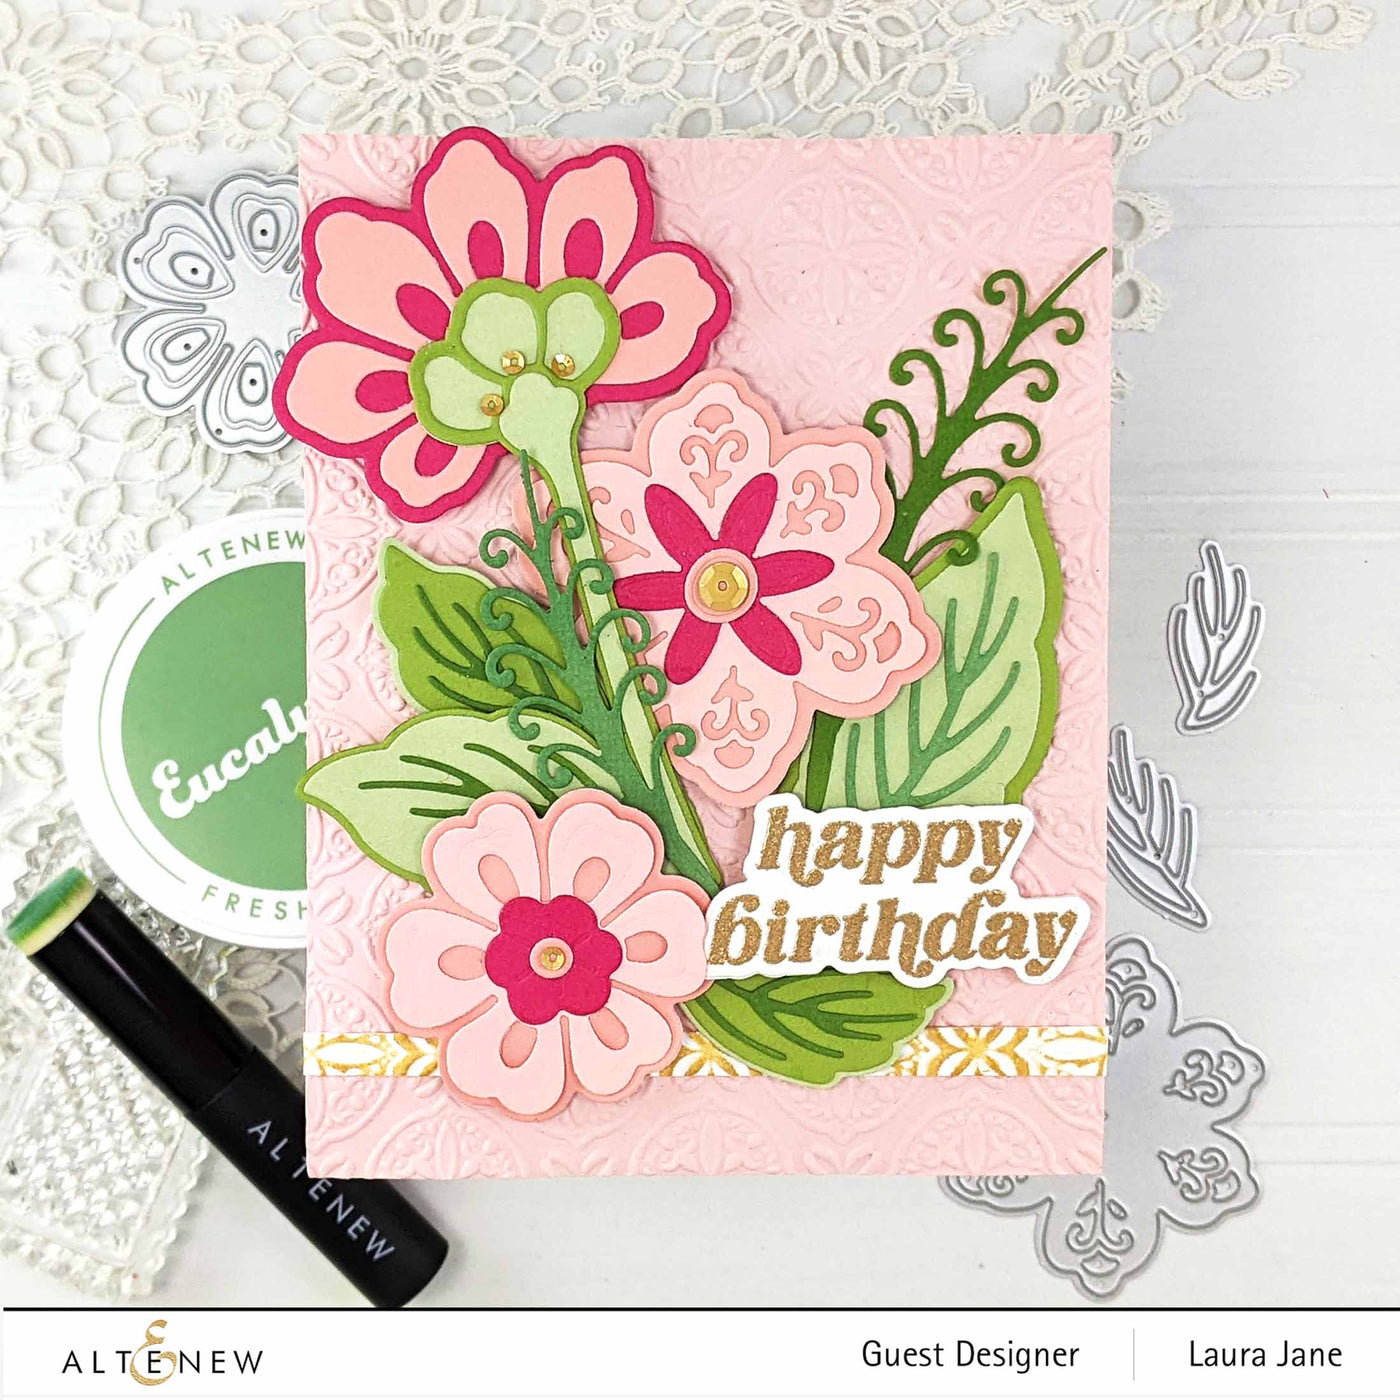 Altenew Stamp & Die Bundle Sweet Bouquet